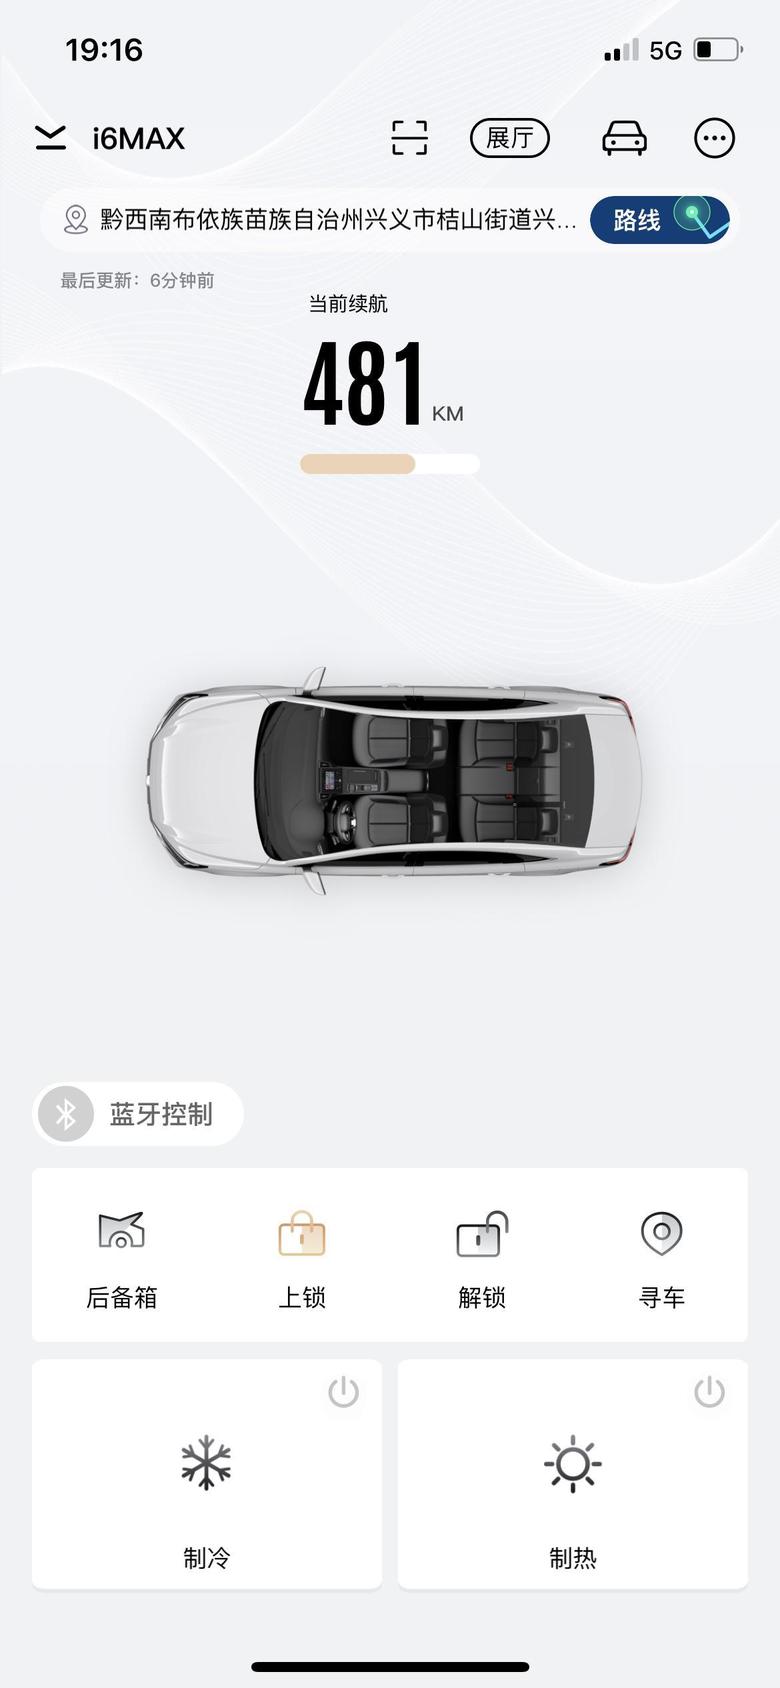 荣威i6 max手机App能控制车辆打火吗？